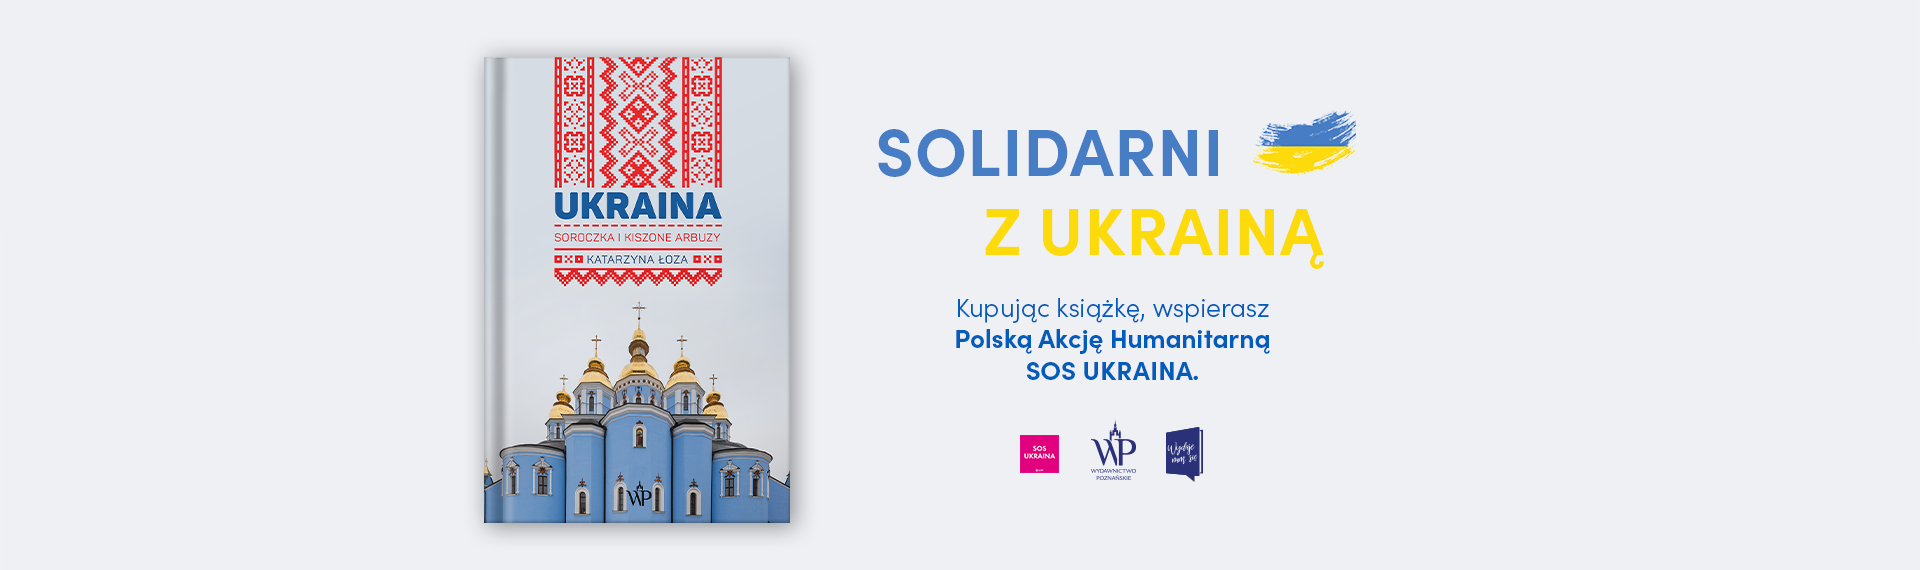 Po lewej stronie okładka książki „Ukraina. Soroczka i kiszone arbuzy”. Po prawej stronie napis SOLIDARNI Z UKRAINĄ. Pod nim napis: Kupując książkę, wspierasz Polską Akcję Humanitarną SOS UKRAINA.